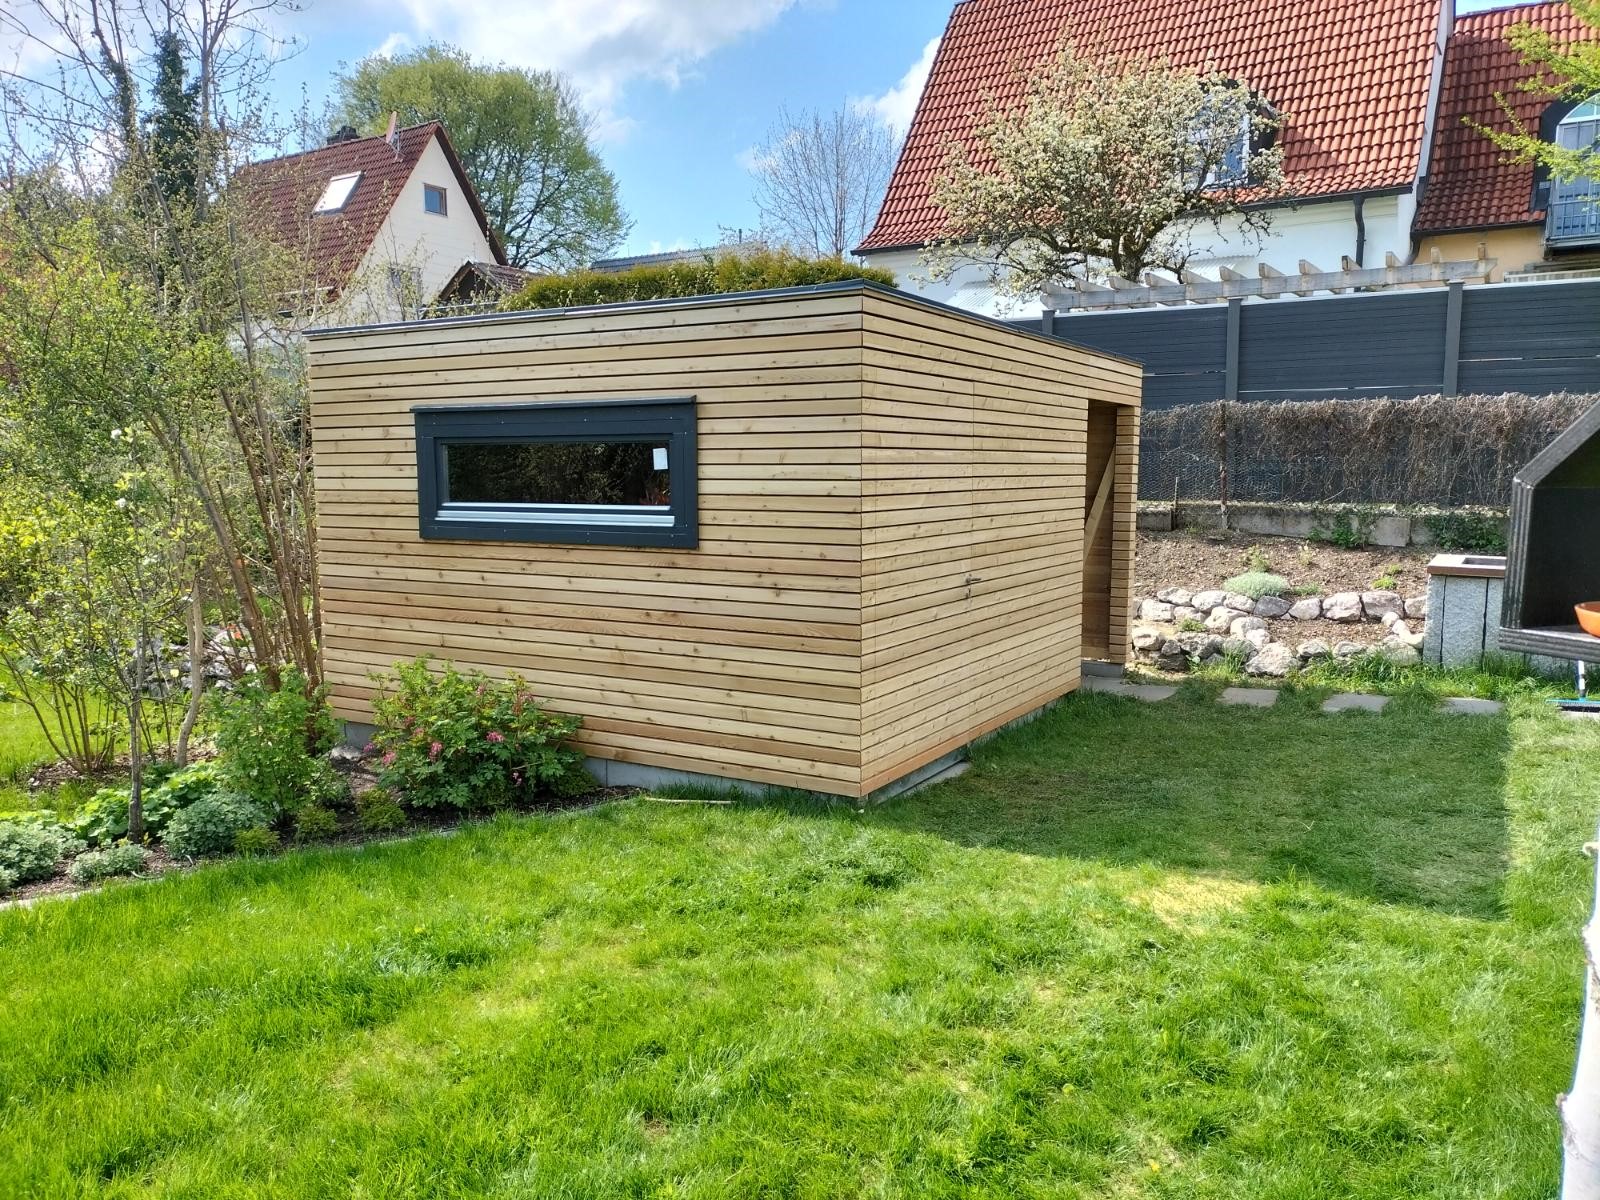 Fertiggestelltes Gartenhaus aus Holz mit Flachdach und horizontaler Fassade in einem Garten in Starnberg